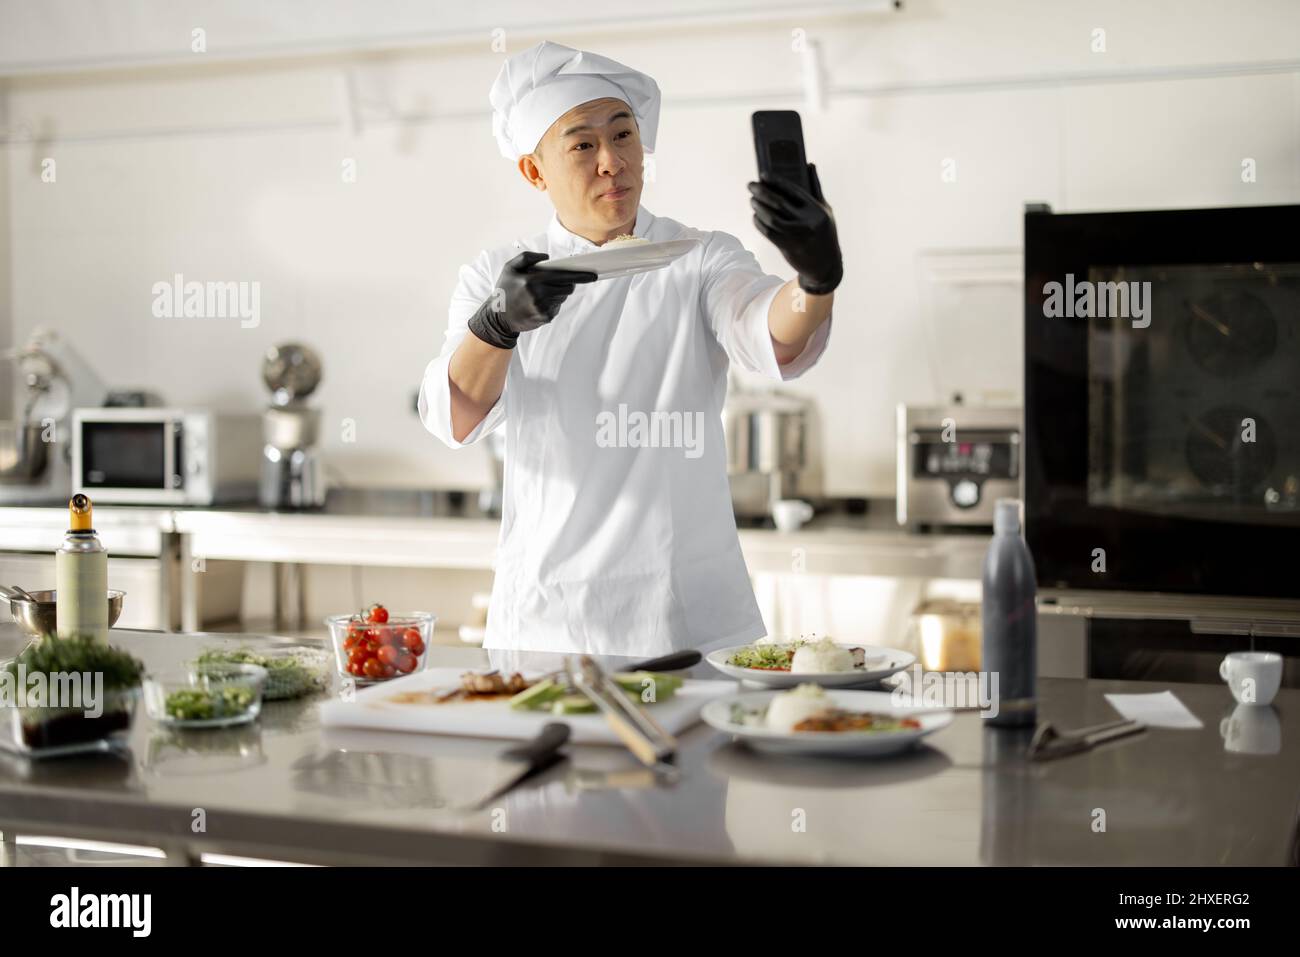 Der asiatische Koch zeichnete am Telefon einen kulinarischen Vlog auf und zeigte einen Teller mit gekochtem Essen in der Küche. Konzept von Video-Blogging und Kochen von Mahlzeiten für das Restaurant Stockfoto